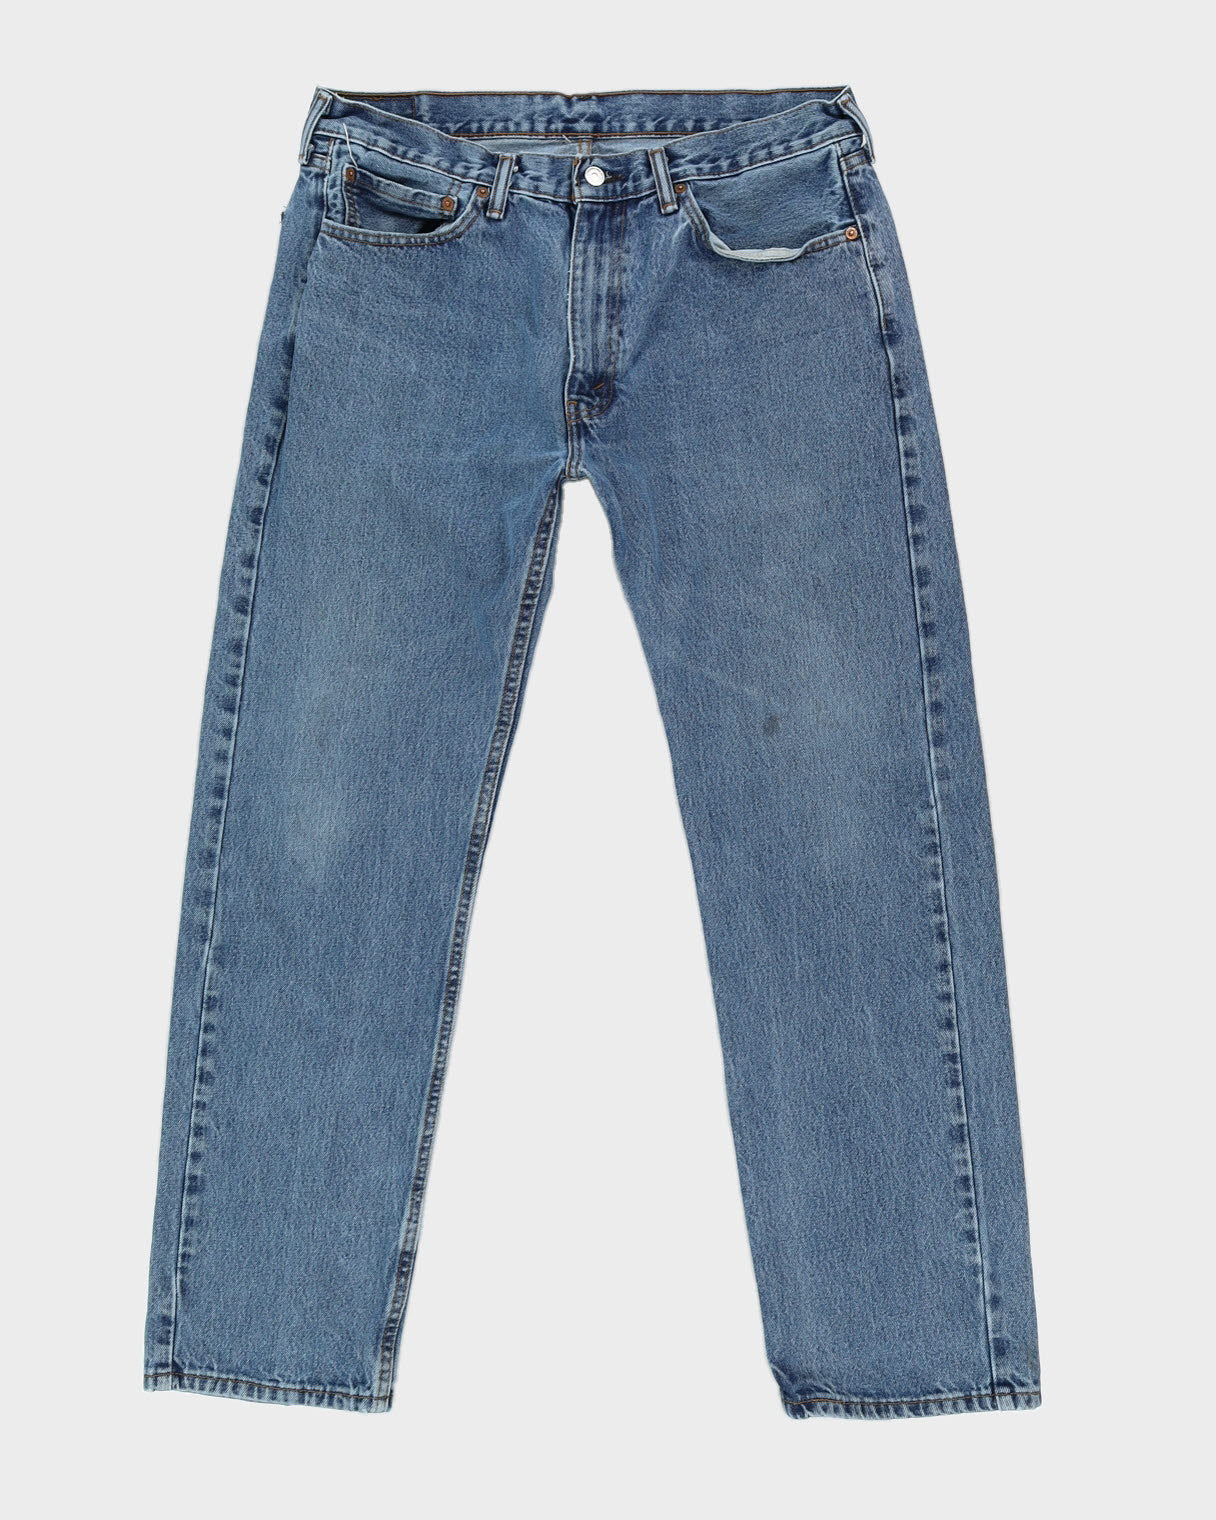 Levi's 505 Blue Jeans - W36 L32